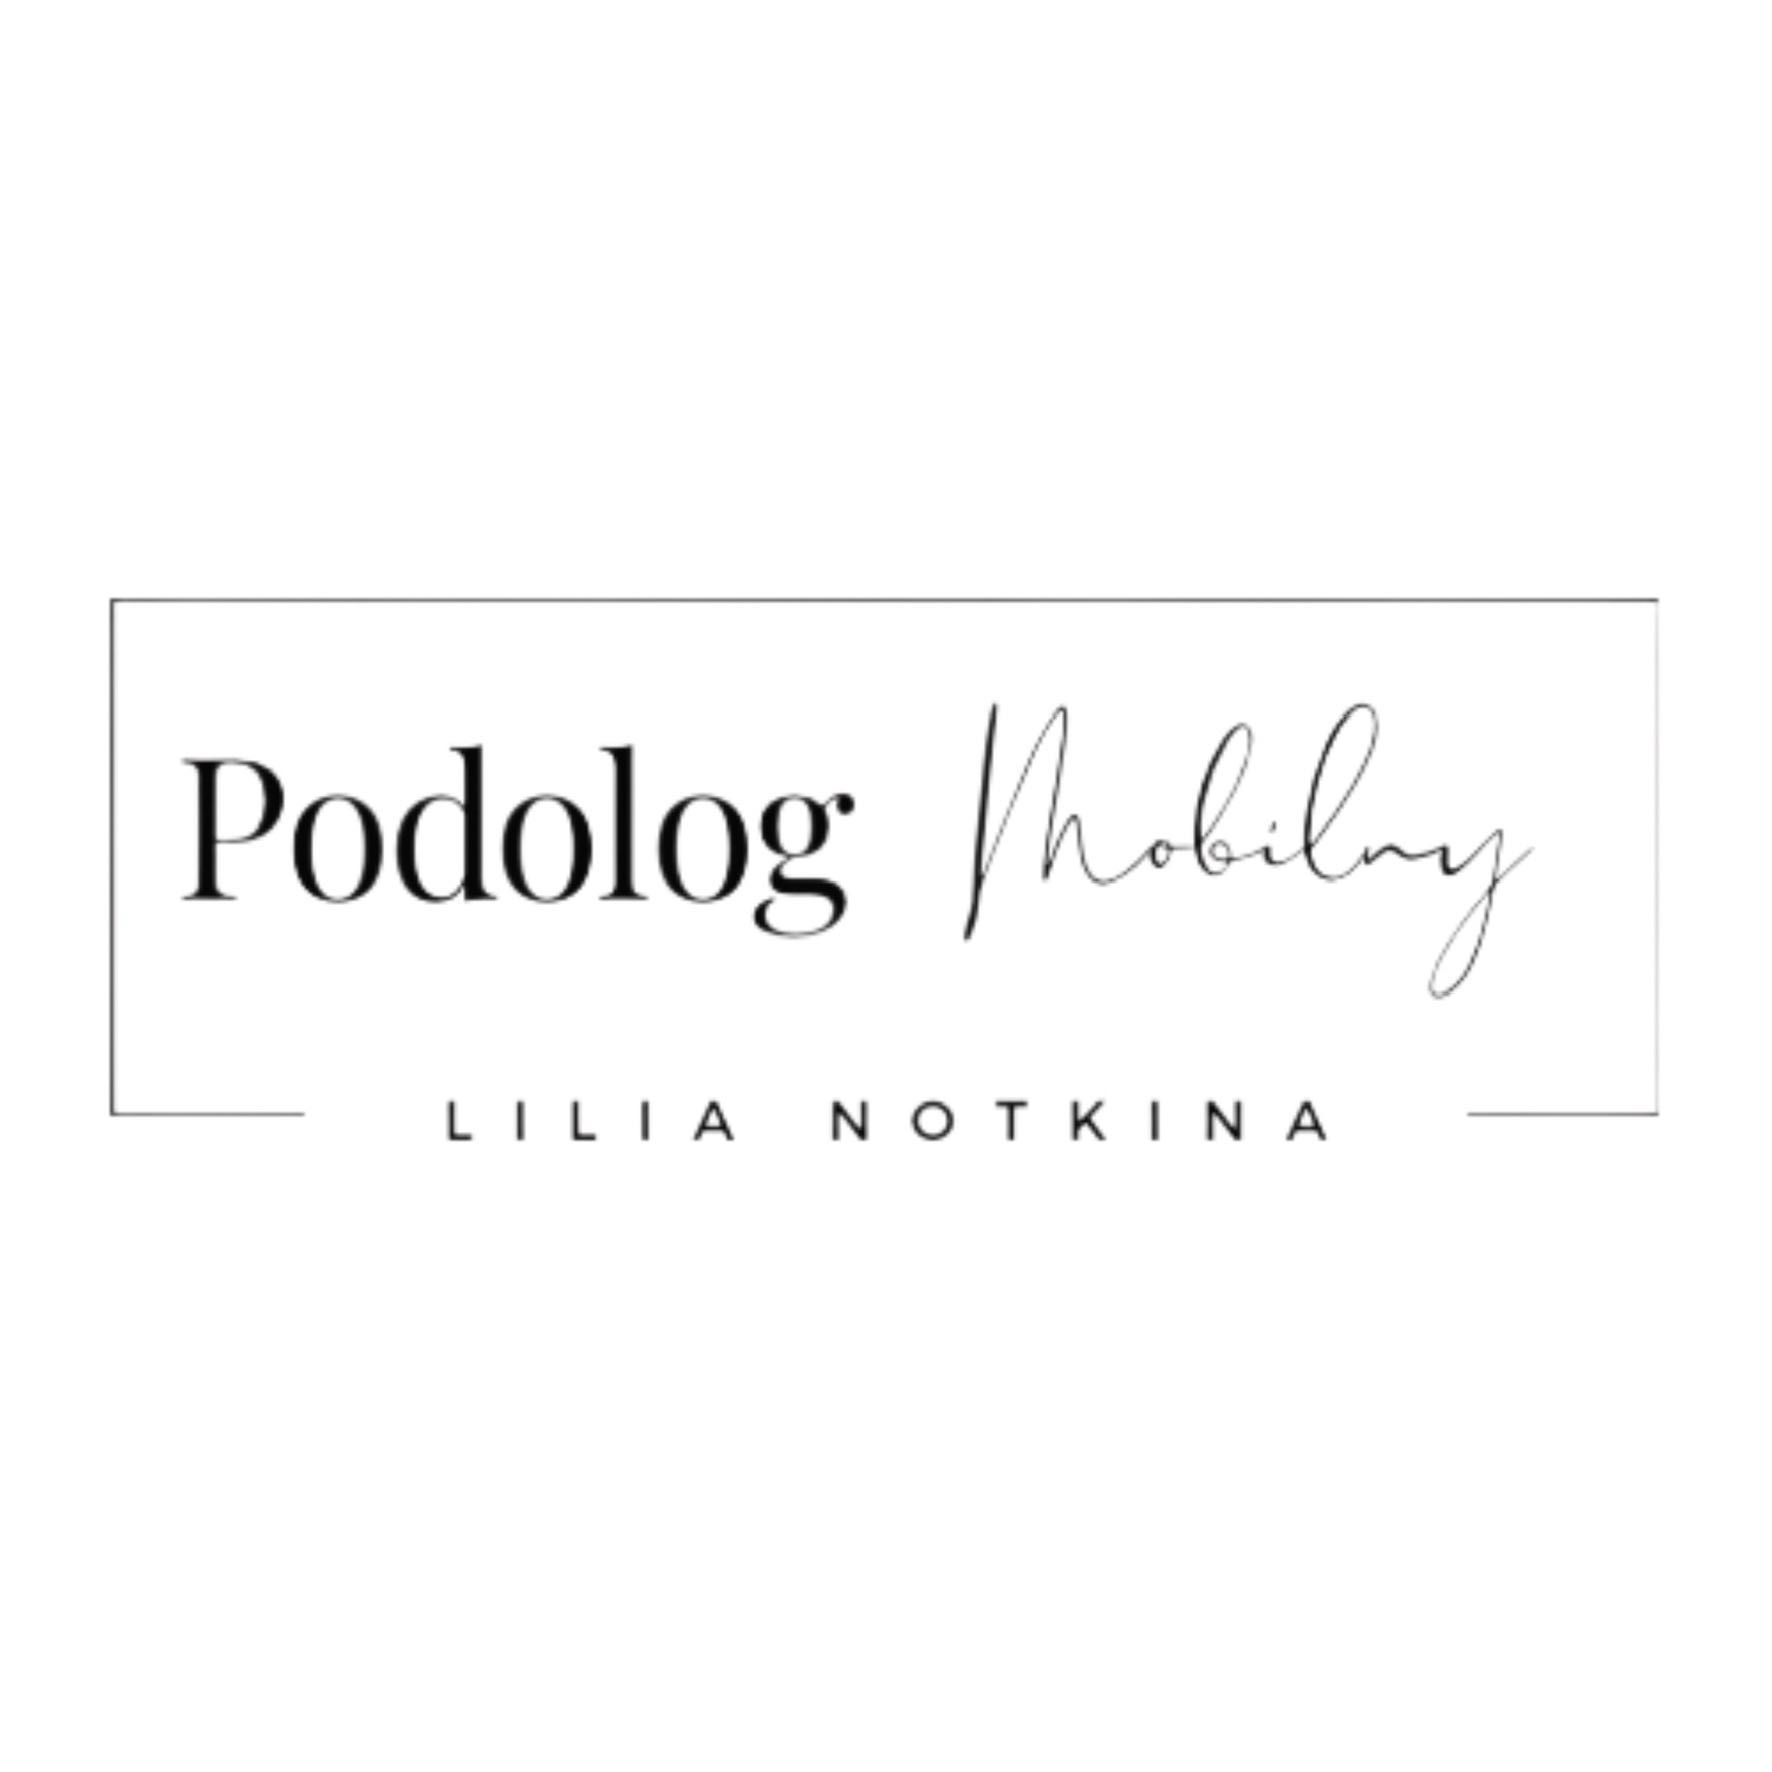 Podolog Mobilny Lilia Notkina, 80-299, Gdańsk